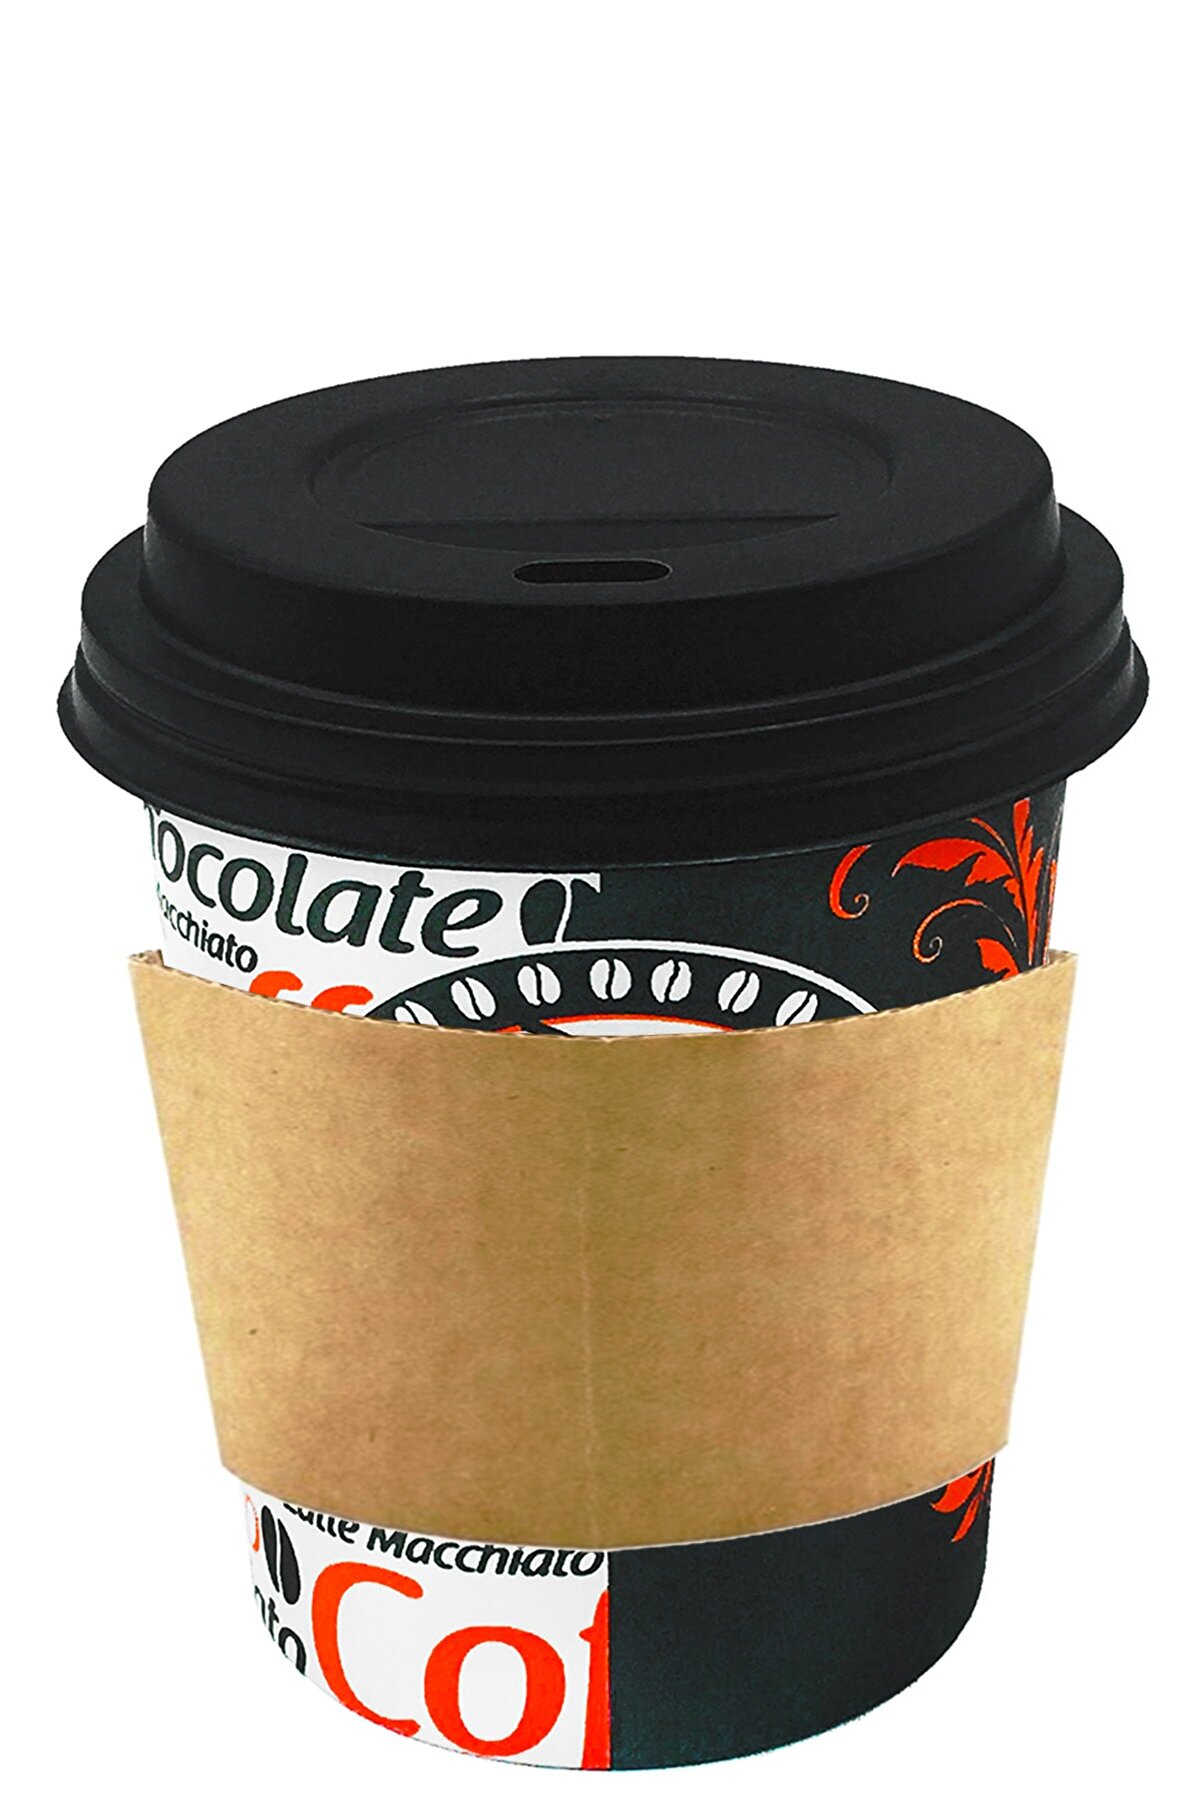 Afra Tedarik 8 Oz Siyah Kapaklı Tutamaçlı Karton Bardak Latte Kahve Kağıt Bardak Sleeve 250 Ml - 100'lü